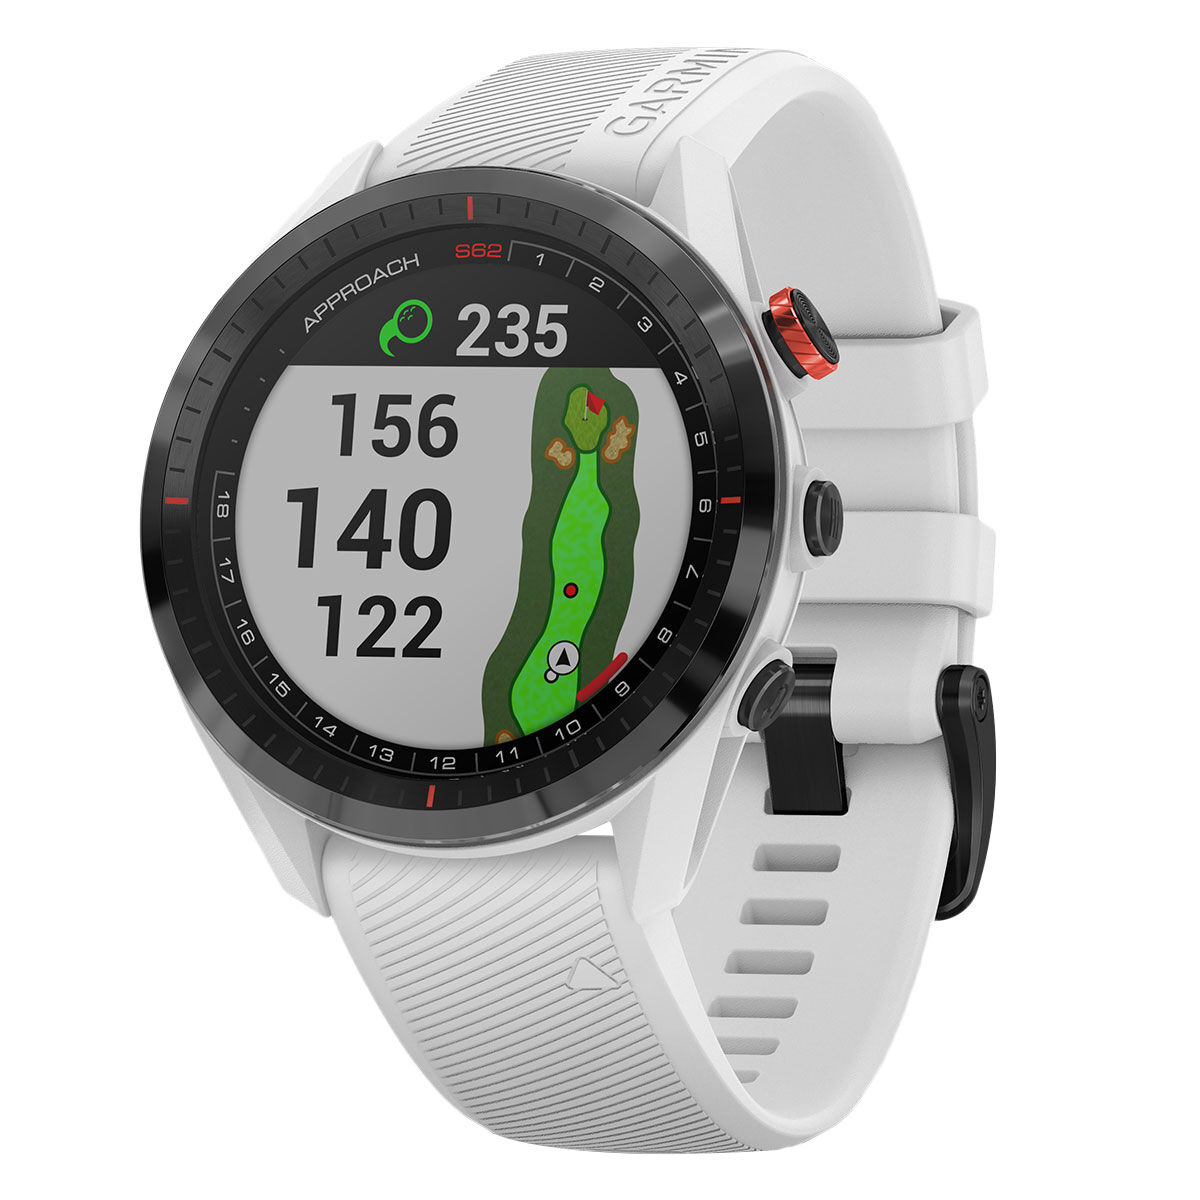 Garmin White and Black Approach S62 Golf GPS Watch, Size: One Size | American Golf von Garmin